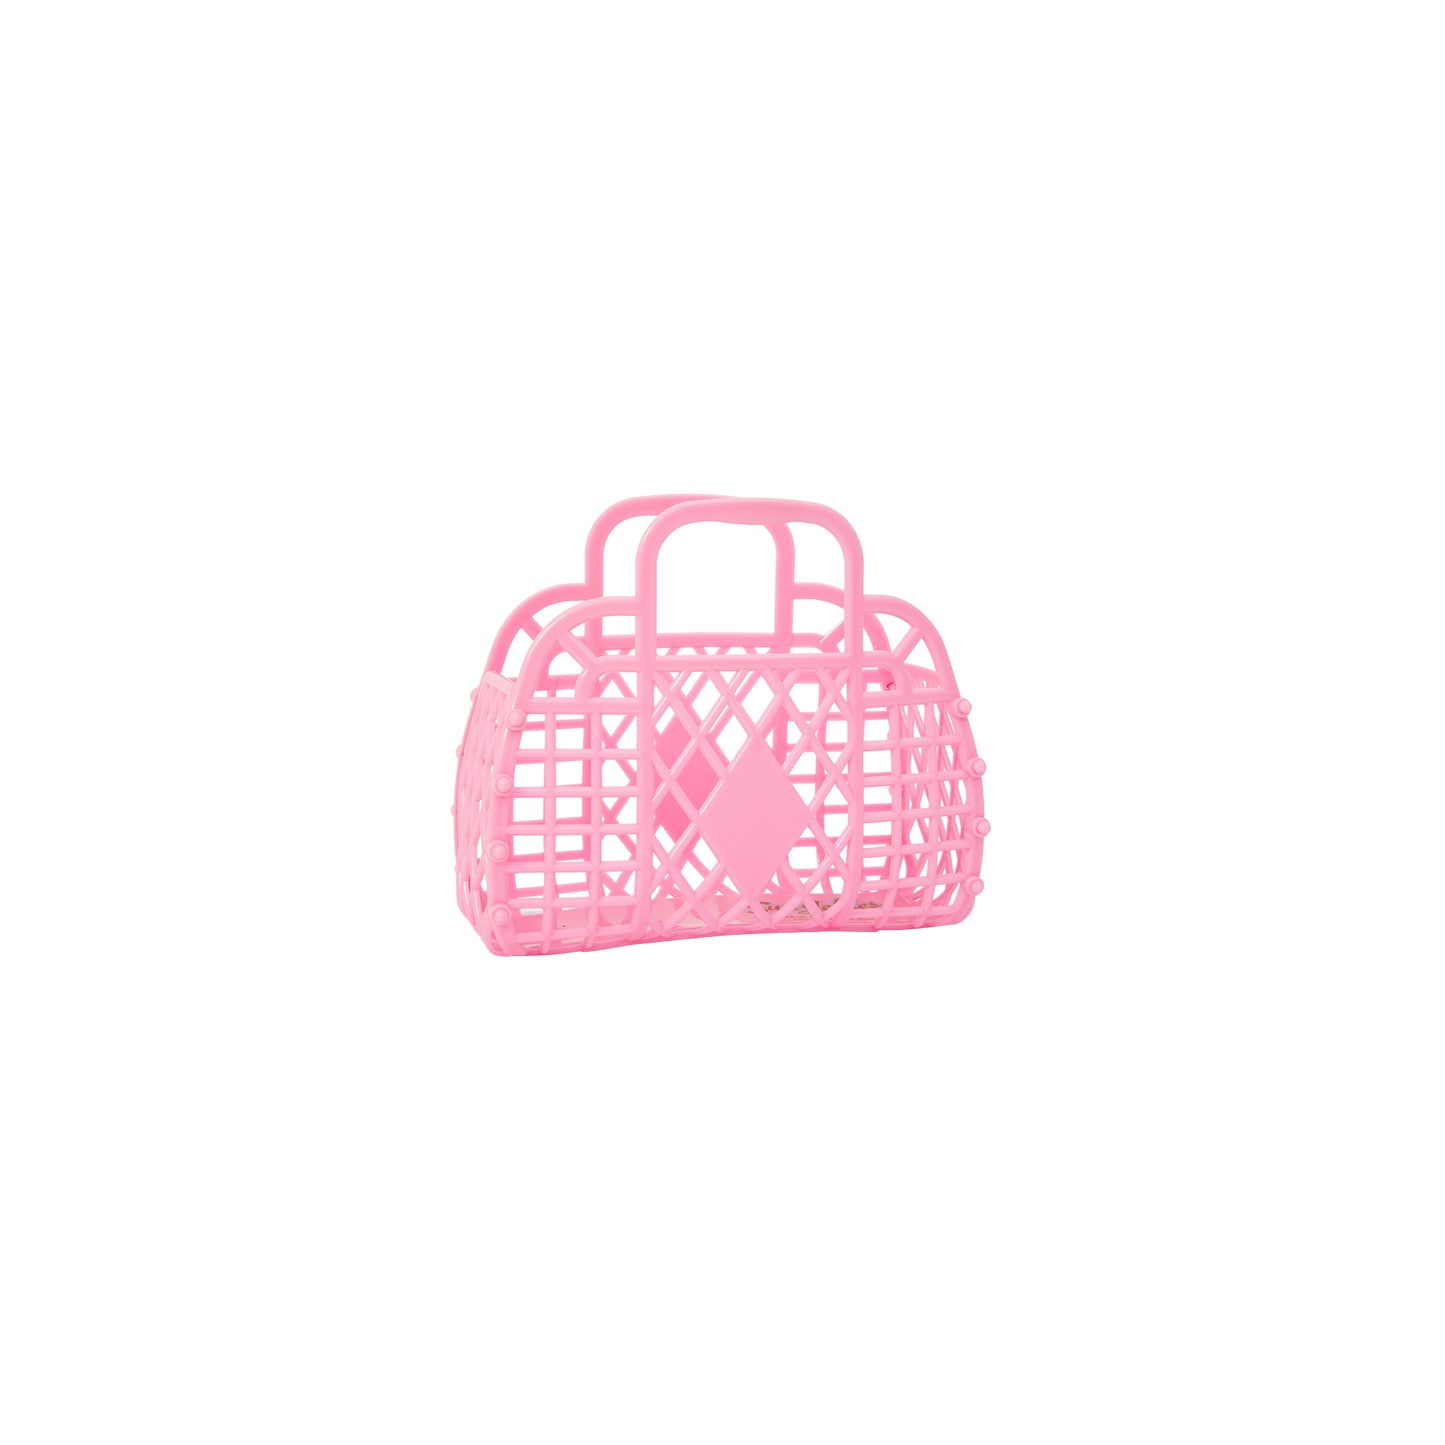 Sunjellies - Mini Retro Basket - Bubblegum Pink